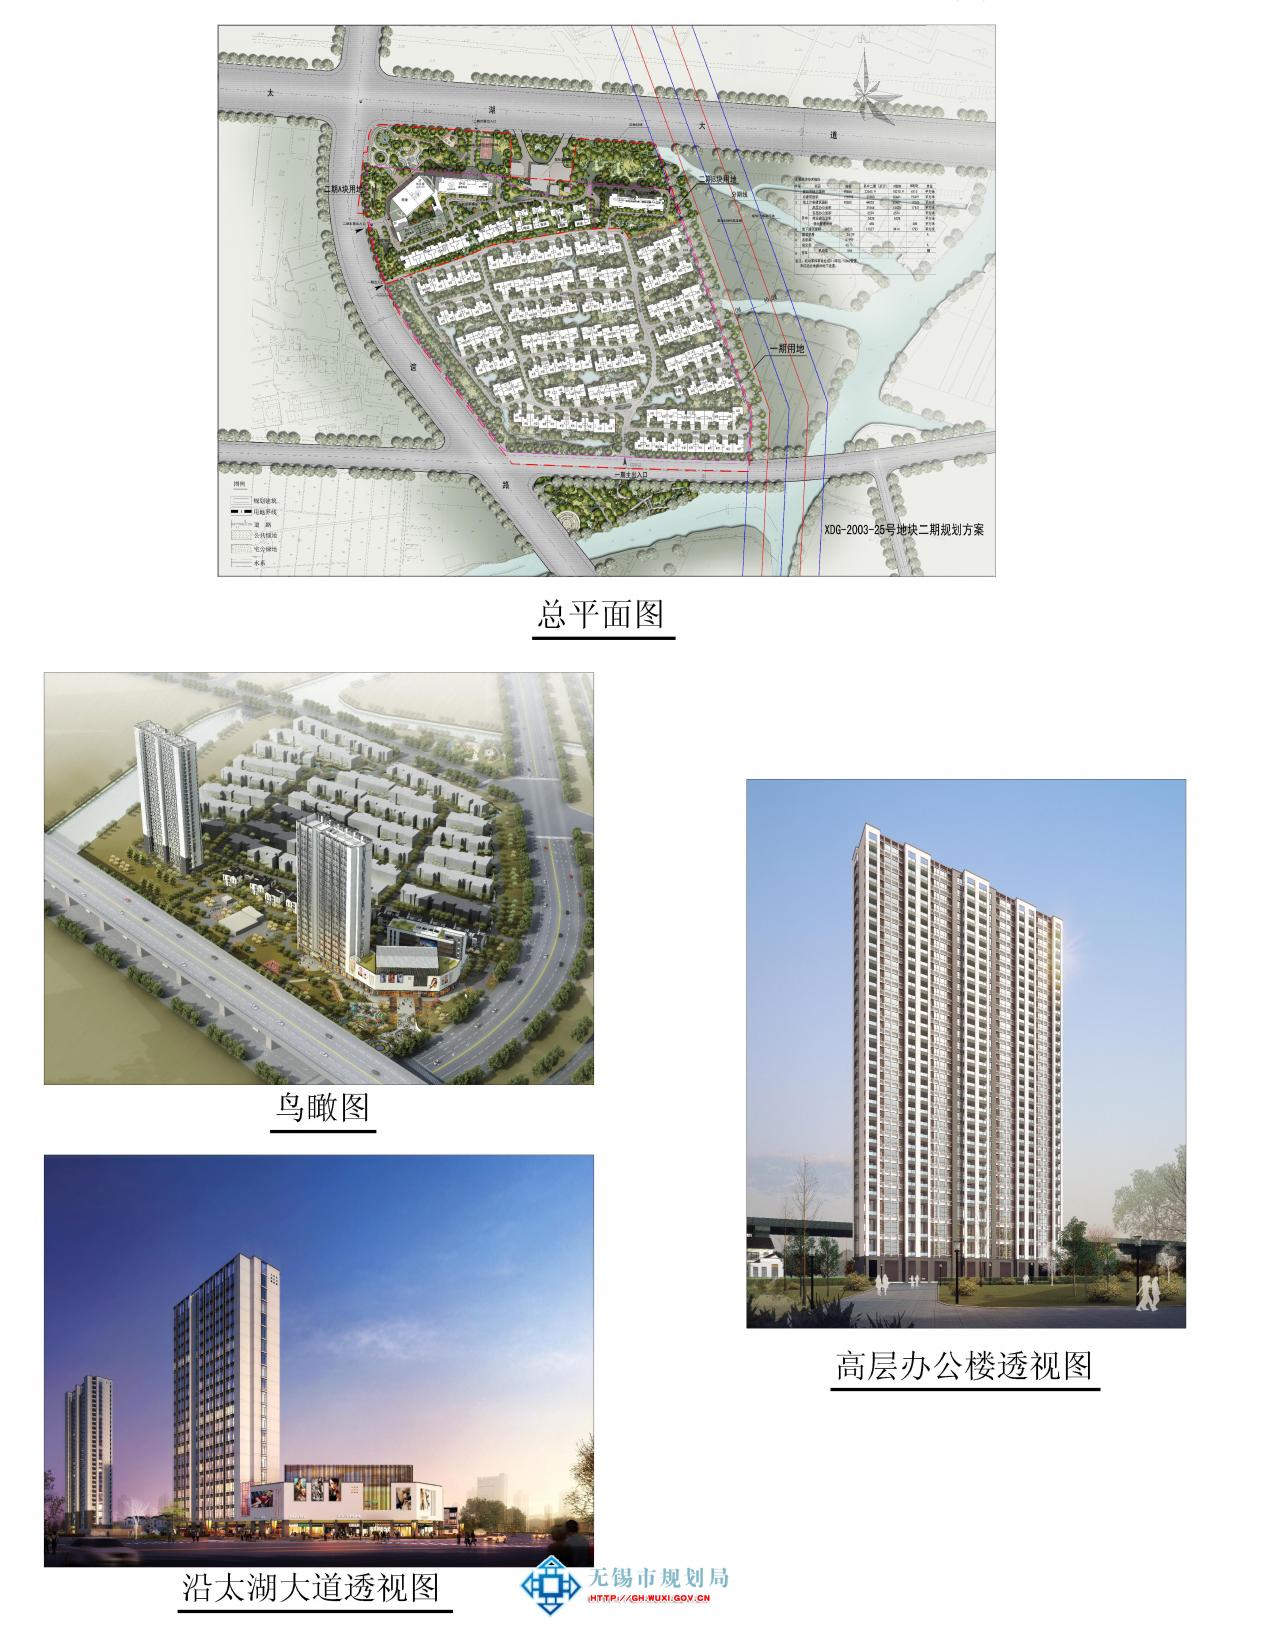 江苏中堂置业有限公司XDG-2003-25号地块开发建设二期项目规划设计方案批前公示